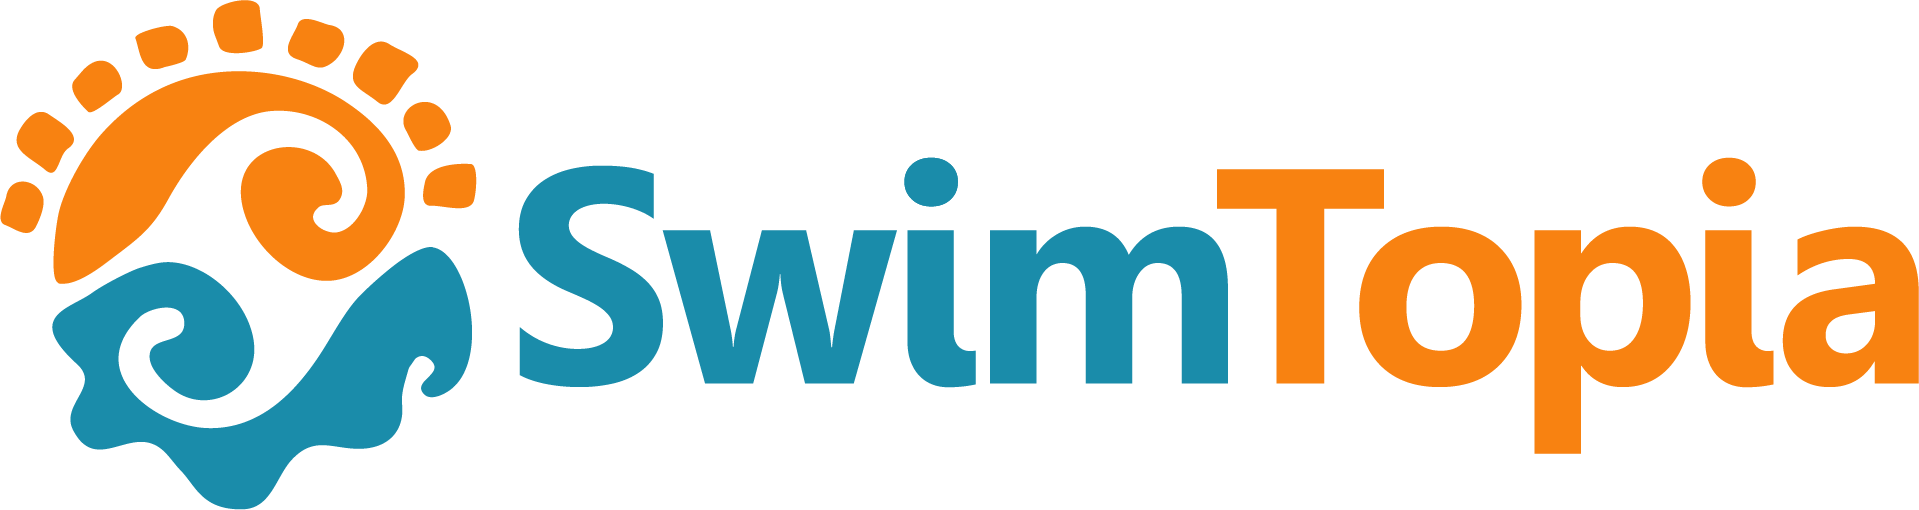 Swimtopia Sponsor logo